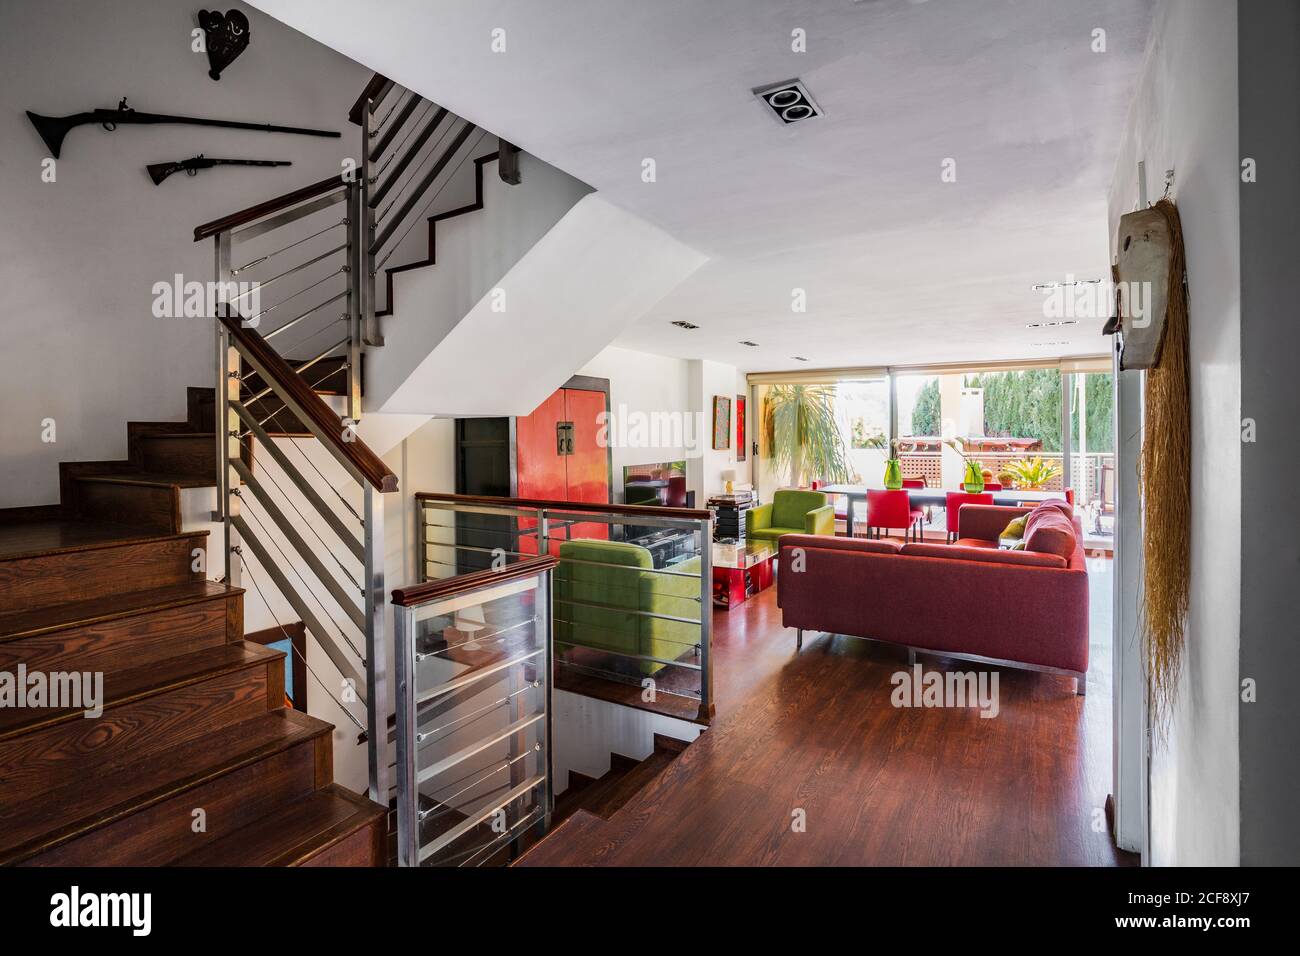 Modernes Wohnzimmer mit Holztreppe in rot und Grüne Farben mit großer Couch und Stühlen auf Laminat platziert Boden gegen weiße Wand Stockfoto